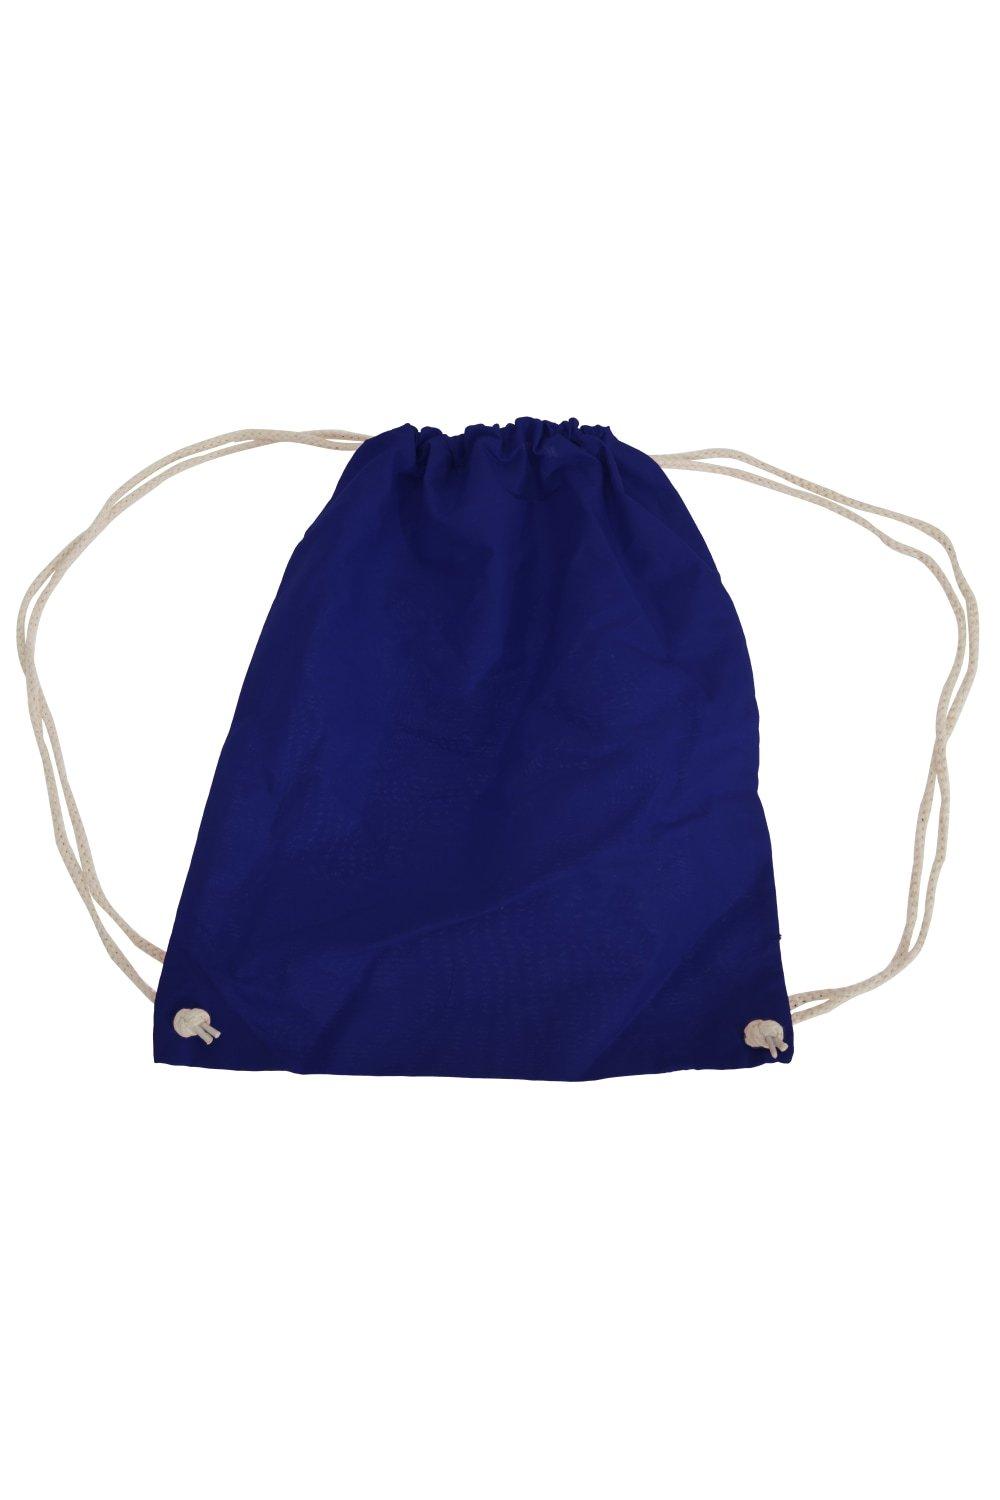 Хлопковая сумка Gymsac - 12 литров (2 шт. в упаковке) Westford Mill, темно-синий